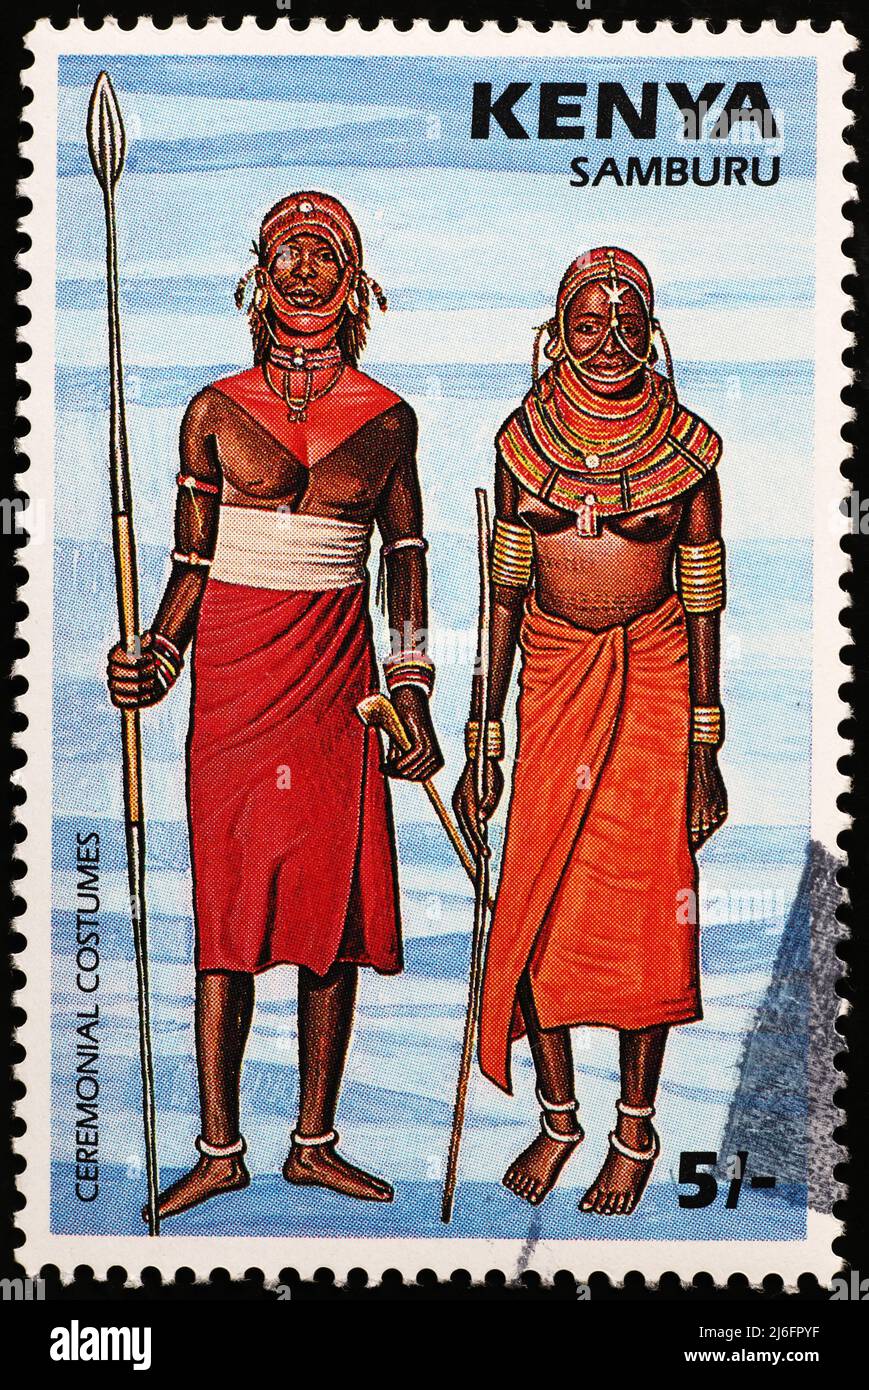 Samburu people on kenyan postage stamp Stock Photo